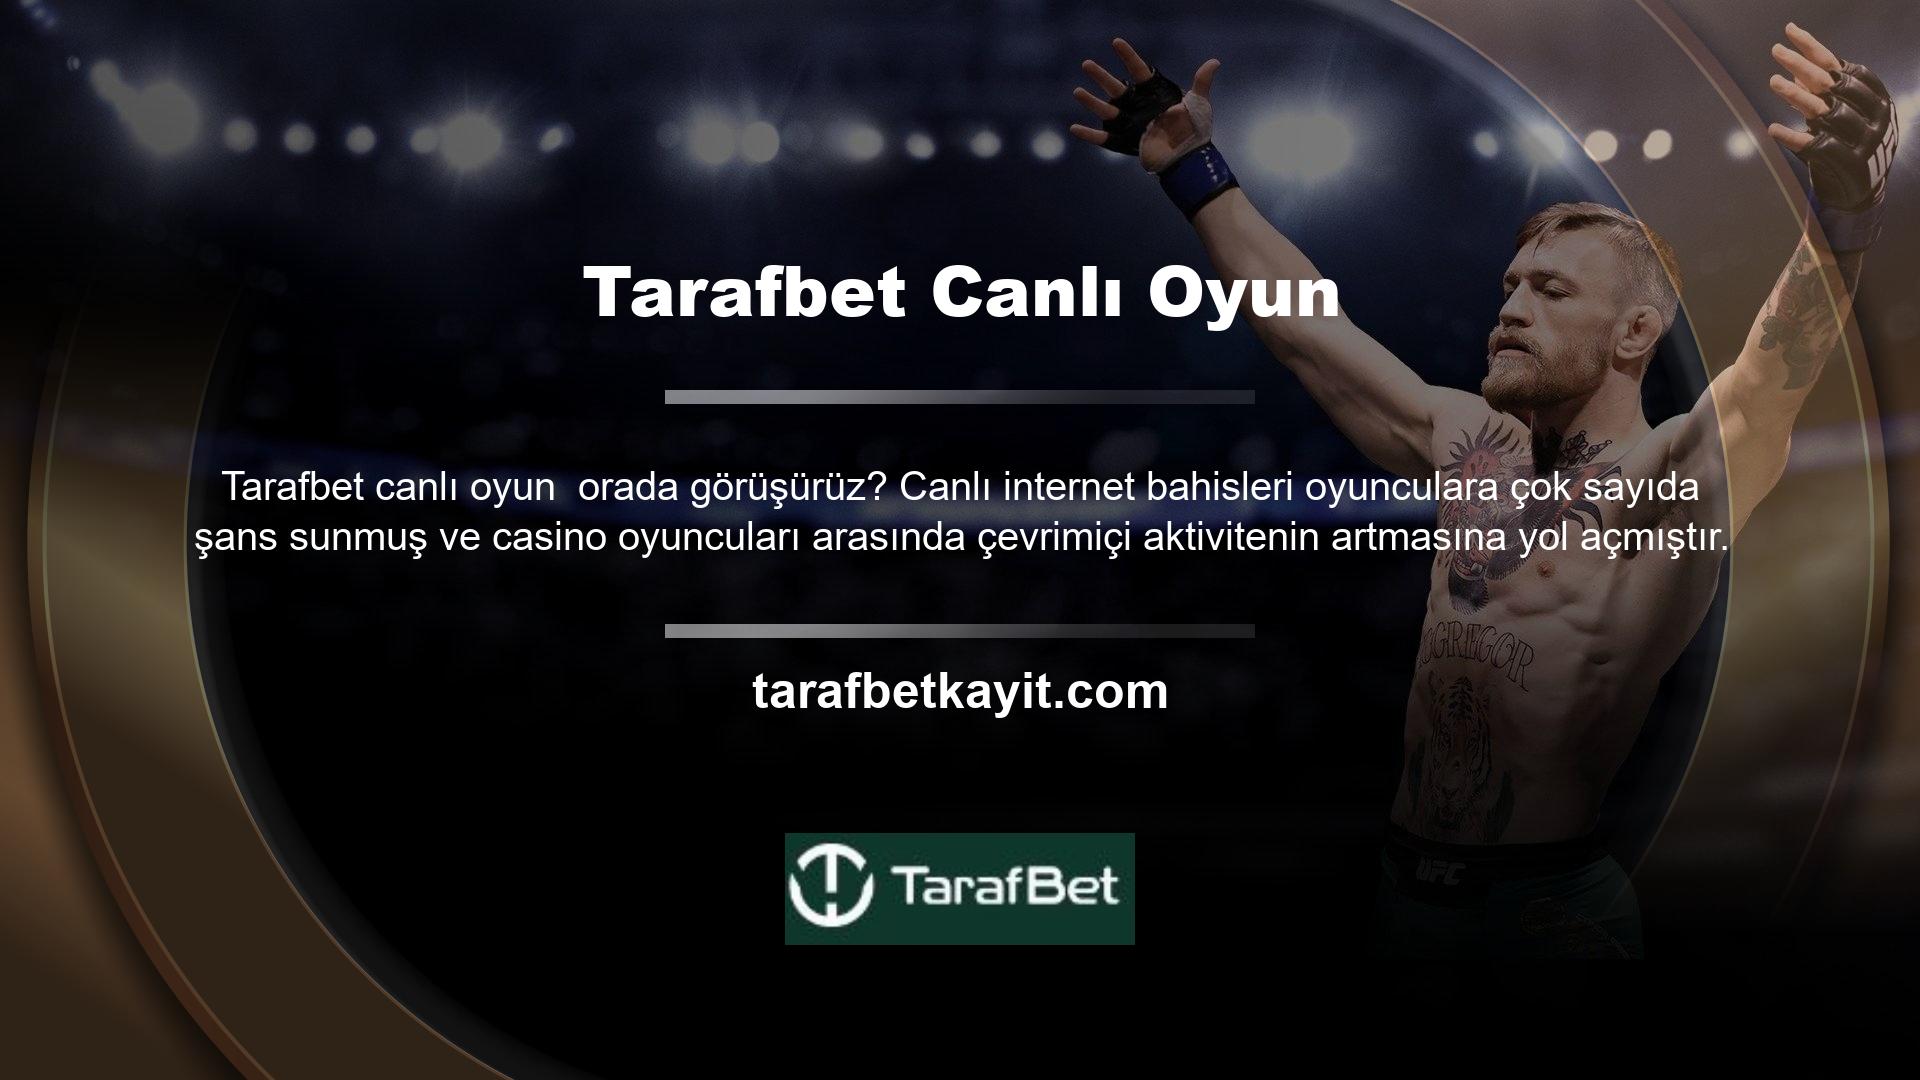 Türkiye casinoları da canlı oyunlar sunmaktadır